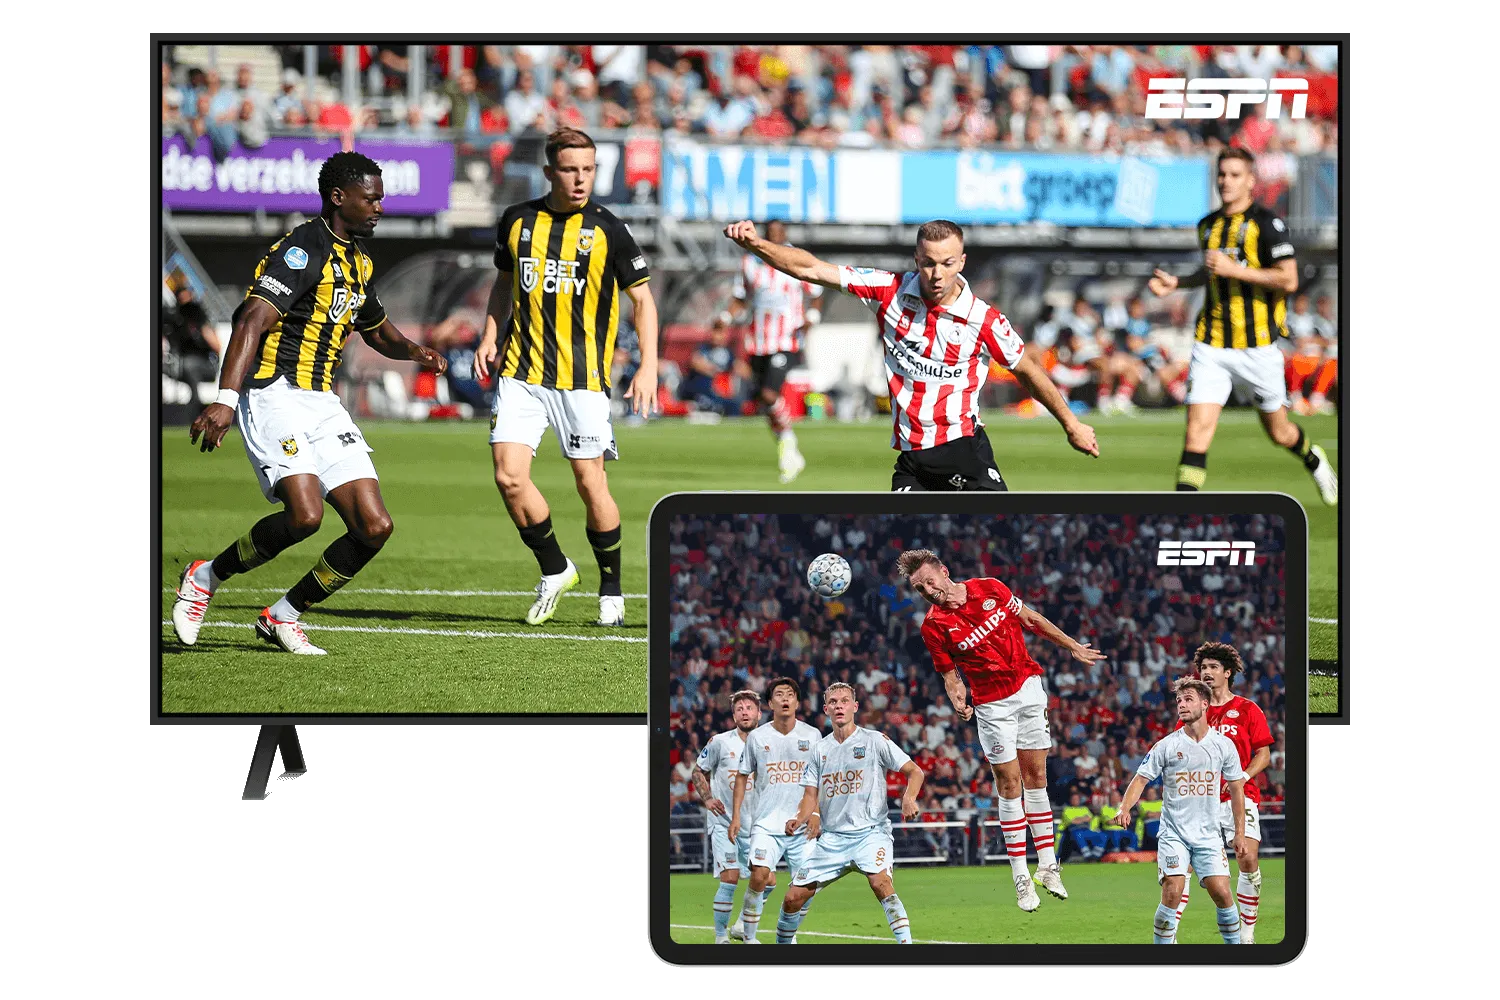 Gratis voetbal van ESPN kijken op je iPad en tv